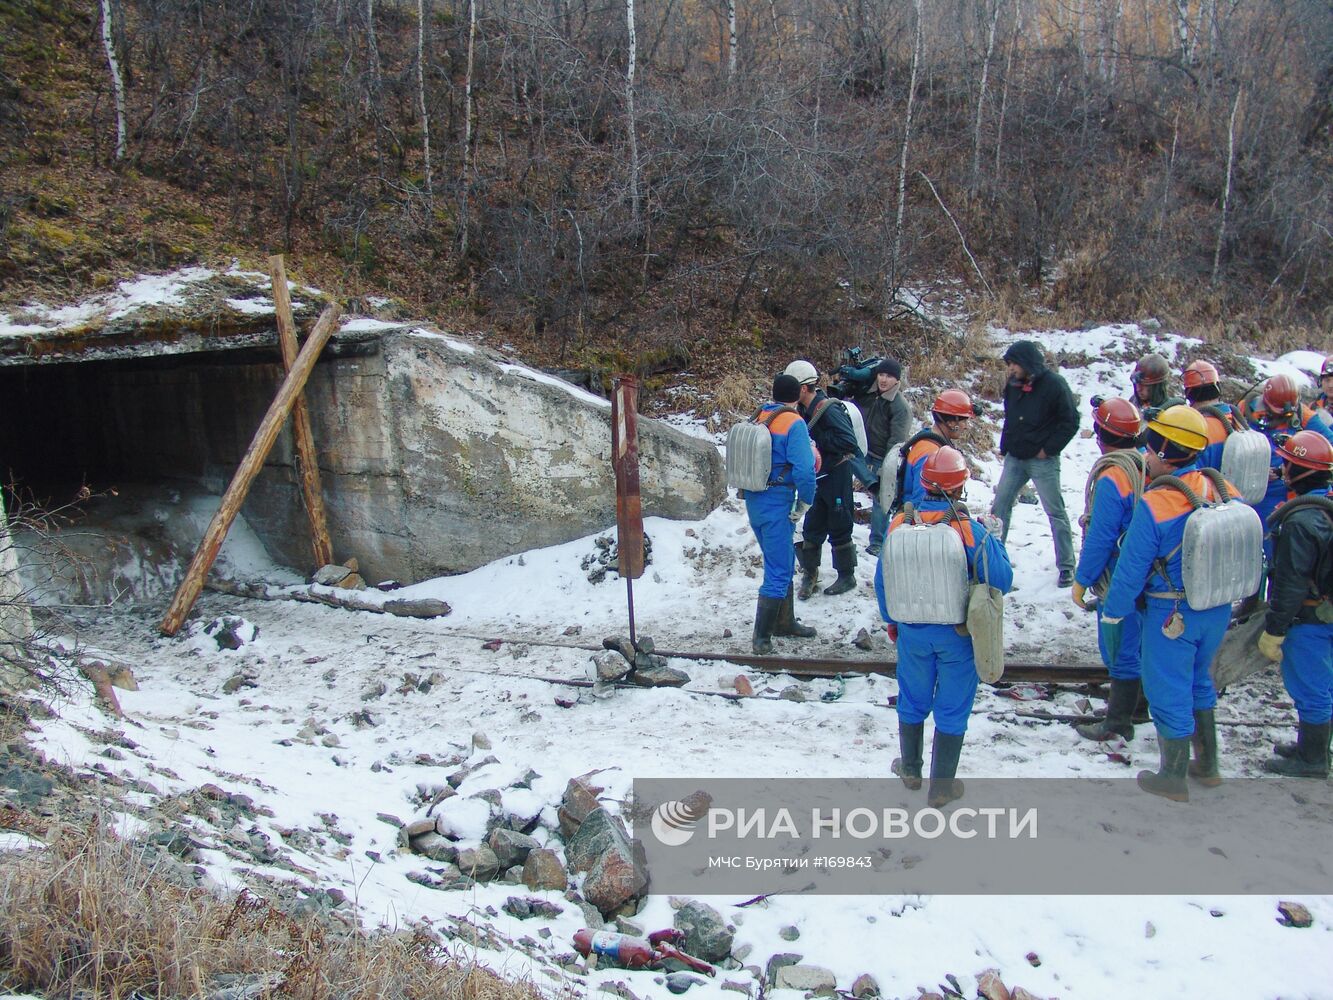 В заброшенной шахте в Бурятии продолжаются поиски пропавших люде